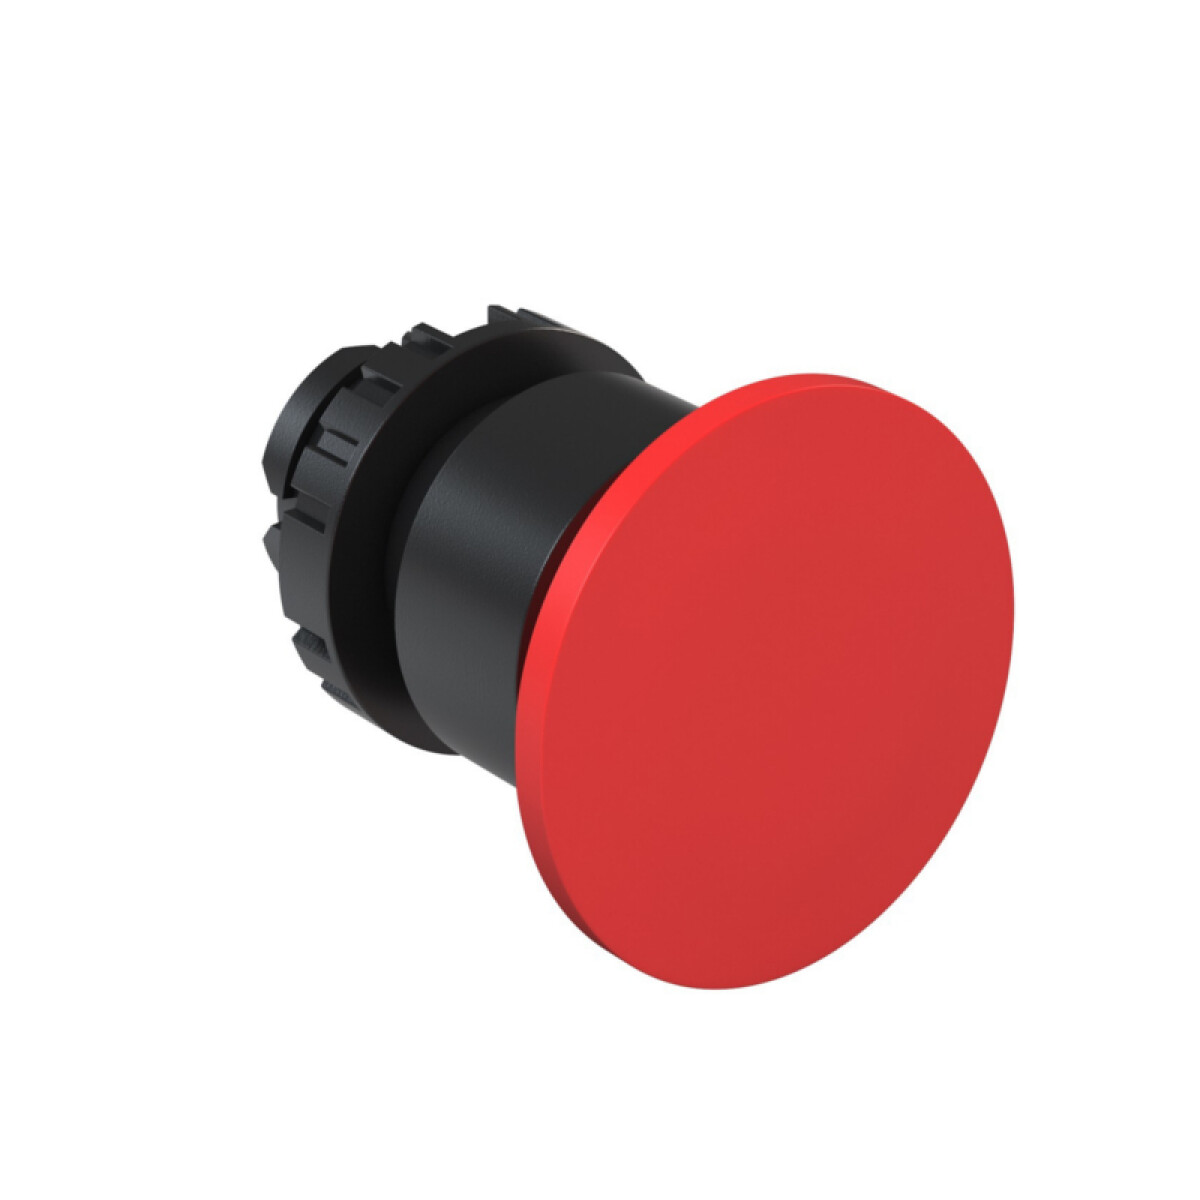 Cabezal hongo c/botón pulsador rojo Ø40mm², BC1 - WE5020 